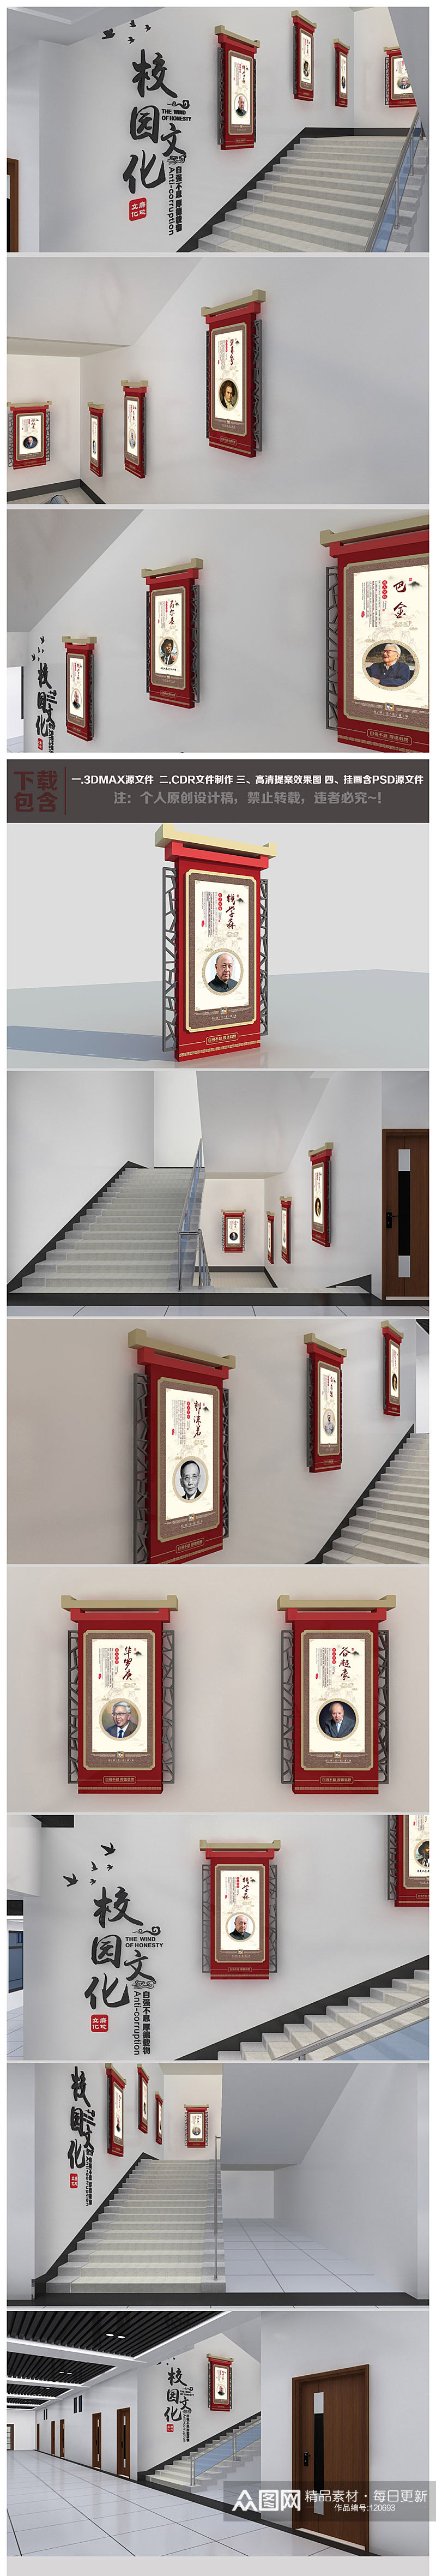 和谐楼道楼梯校园名人名言文化墙名人墙设计素材